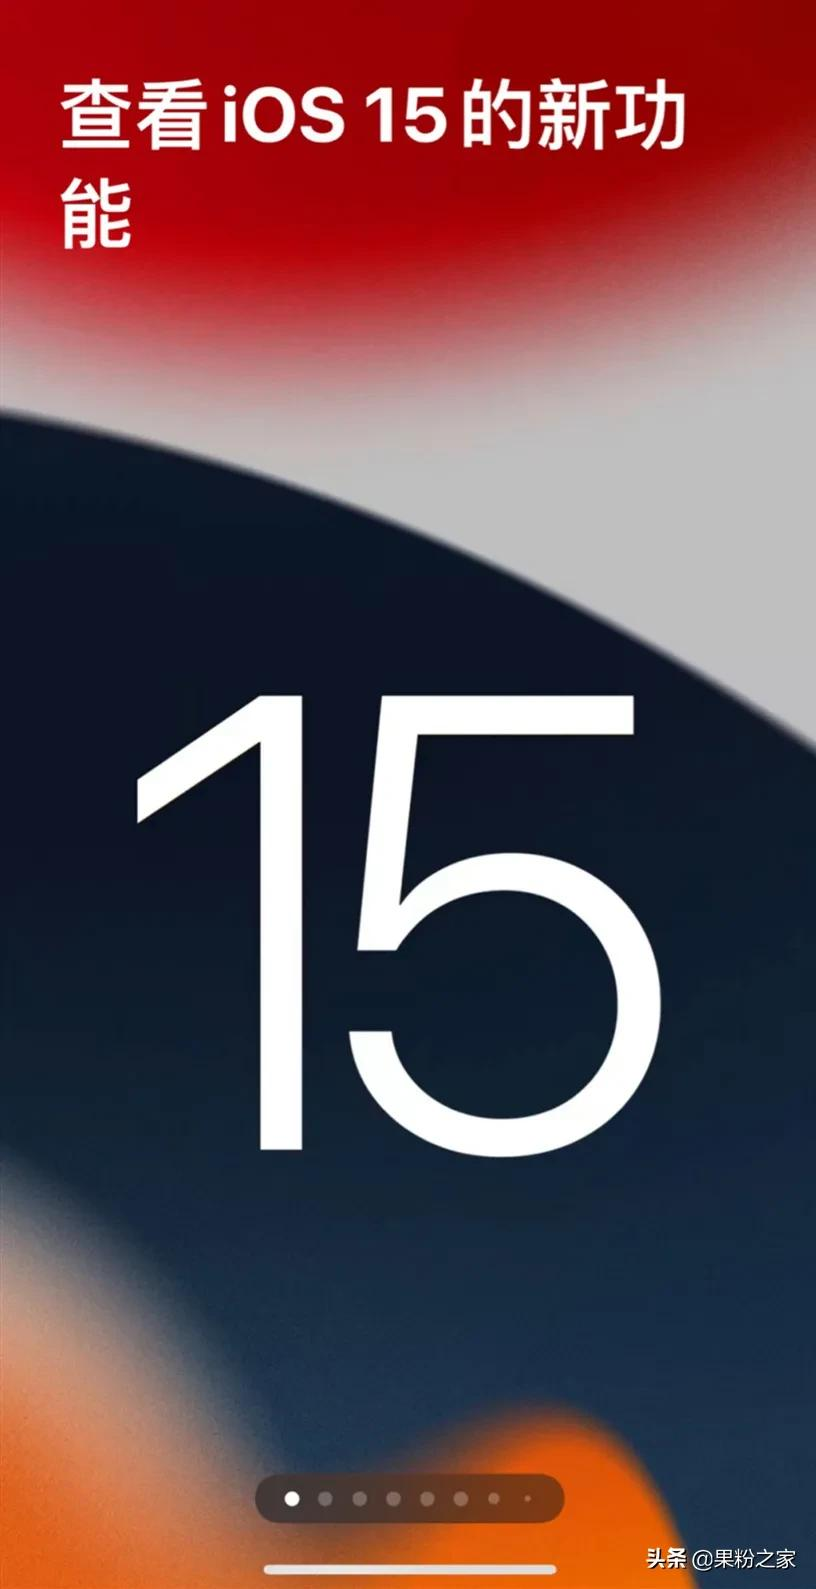 苹果推送iOS 15 正式版更新内容通知